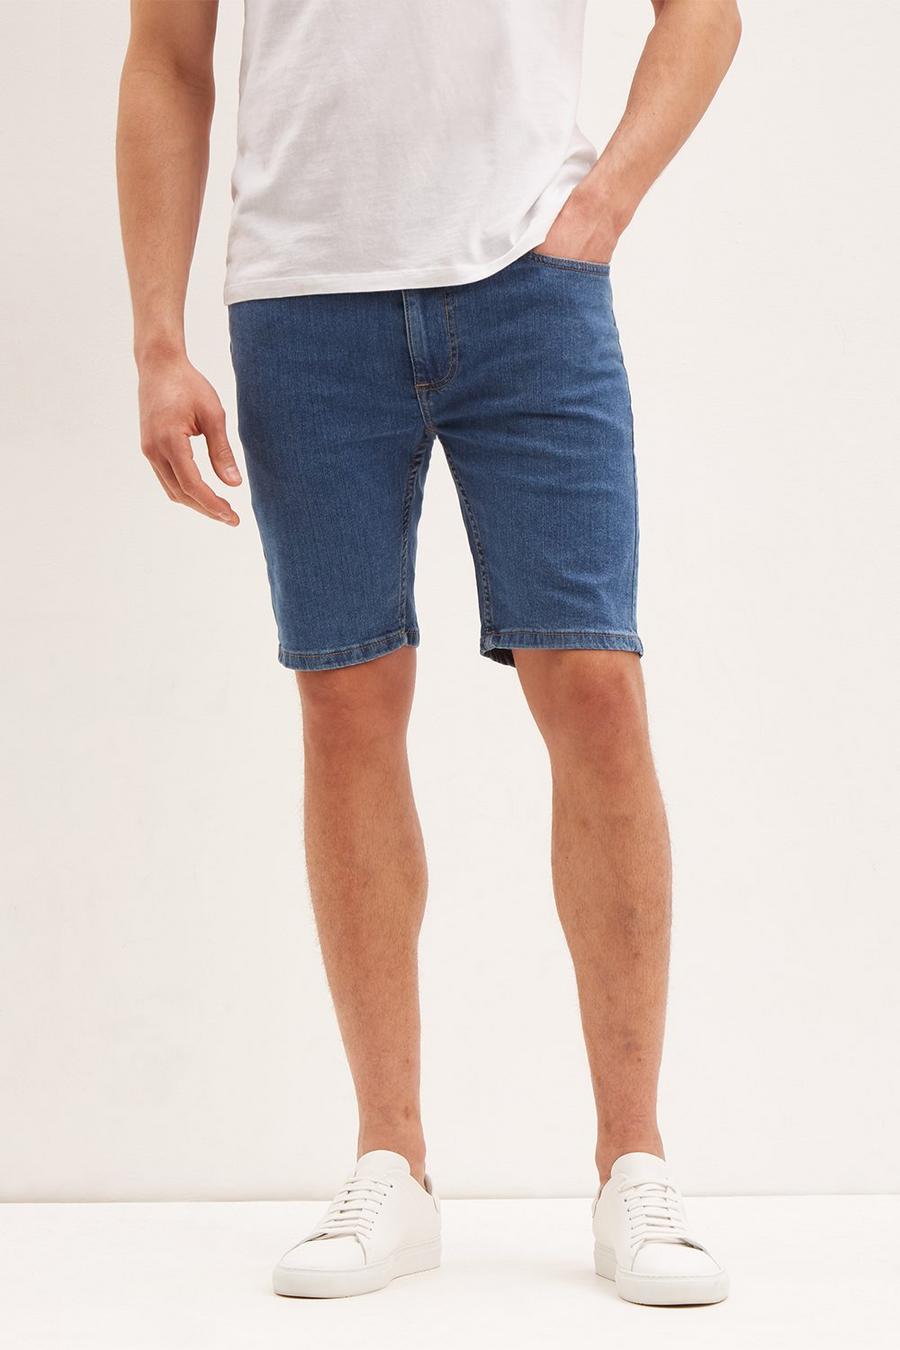 Skinny Mid Blue Denim Shorts